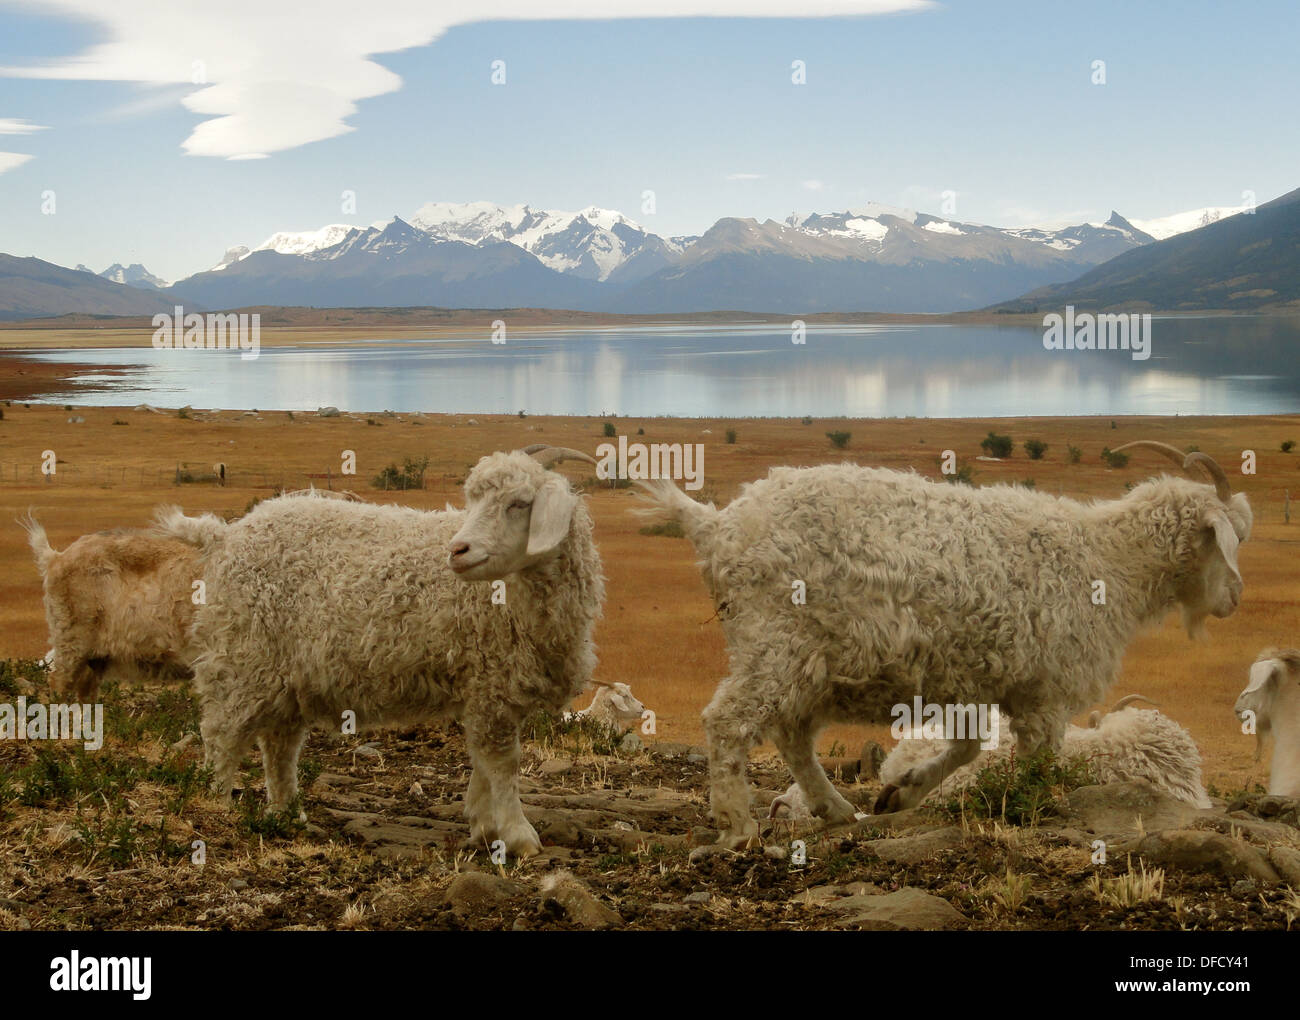 a Patagonian sheep ranch near El Calafate, Argentina Stock Photo